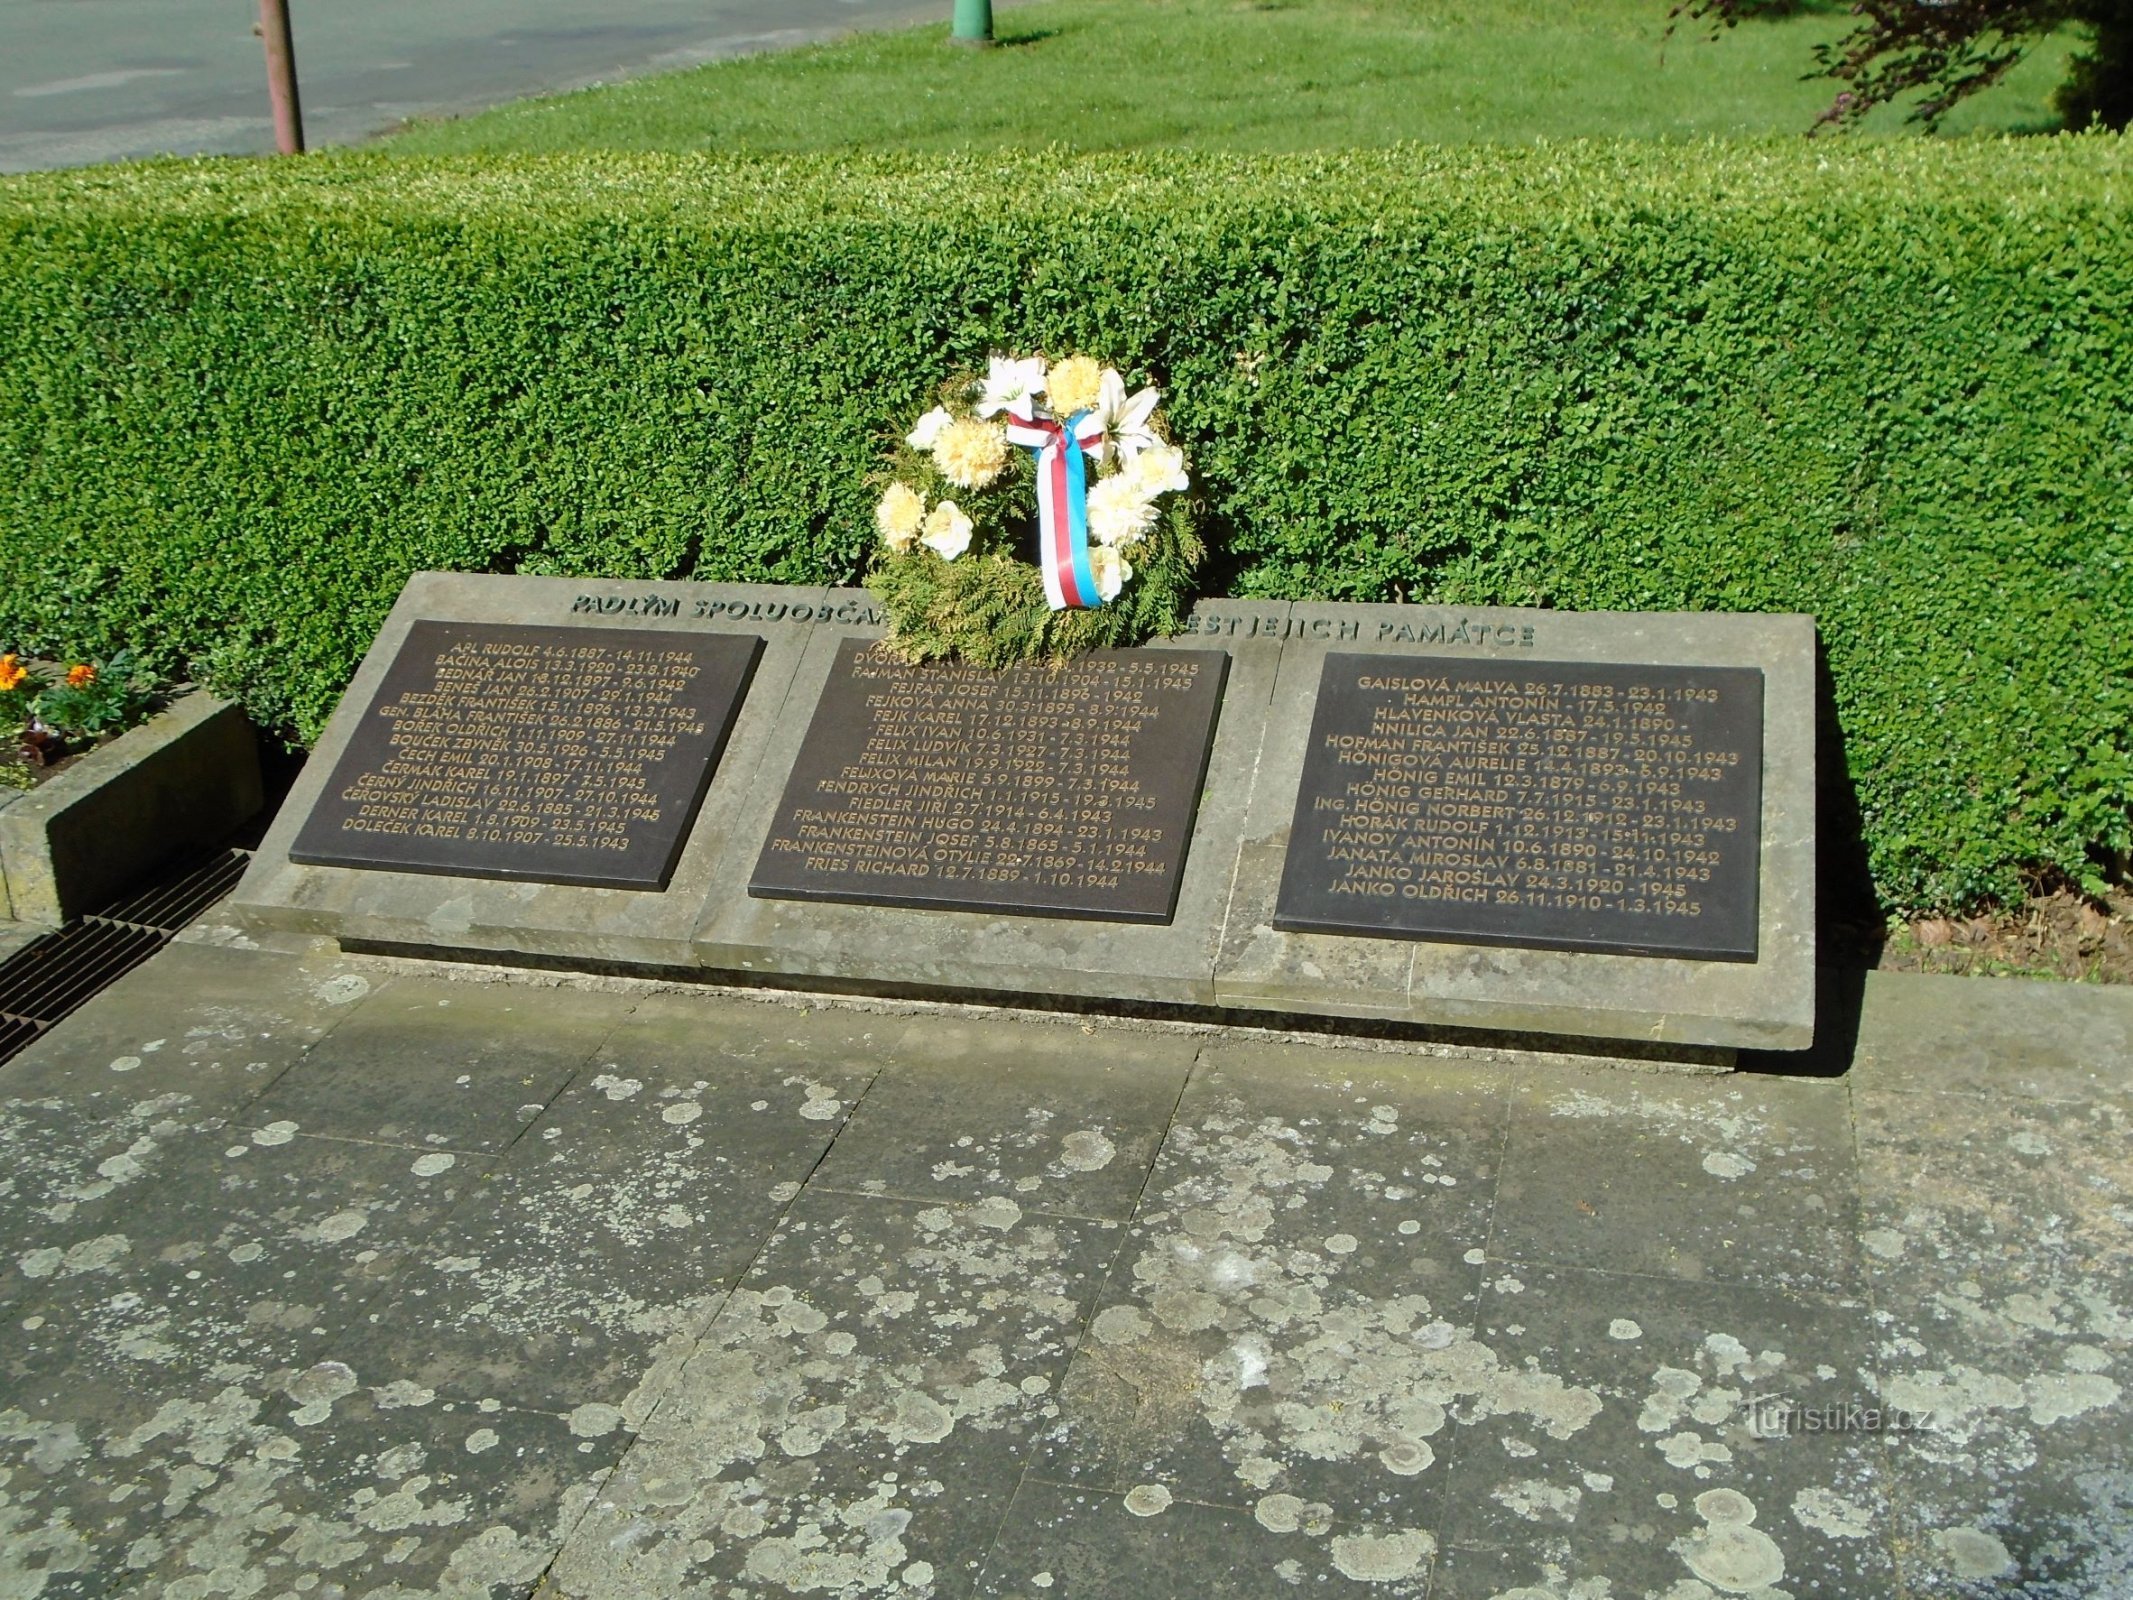 Placas conmemorativas en el monumento a la liberación (Jaroměř, 13.5.2018/XNUMX/XNUMX)